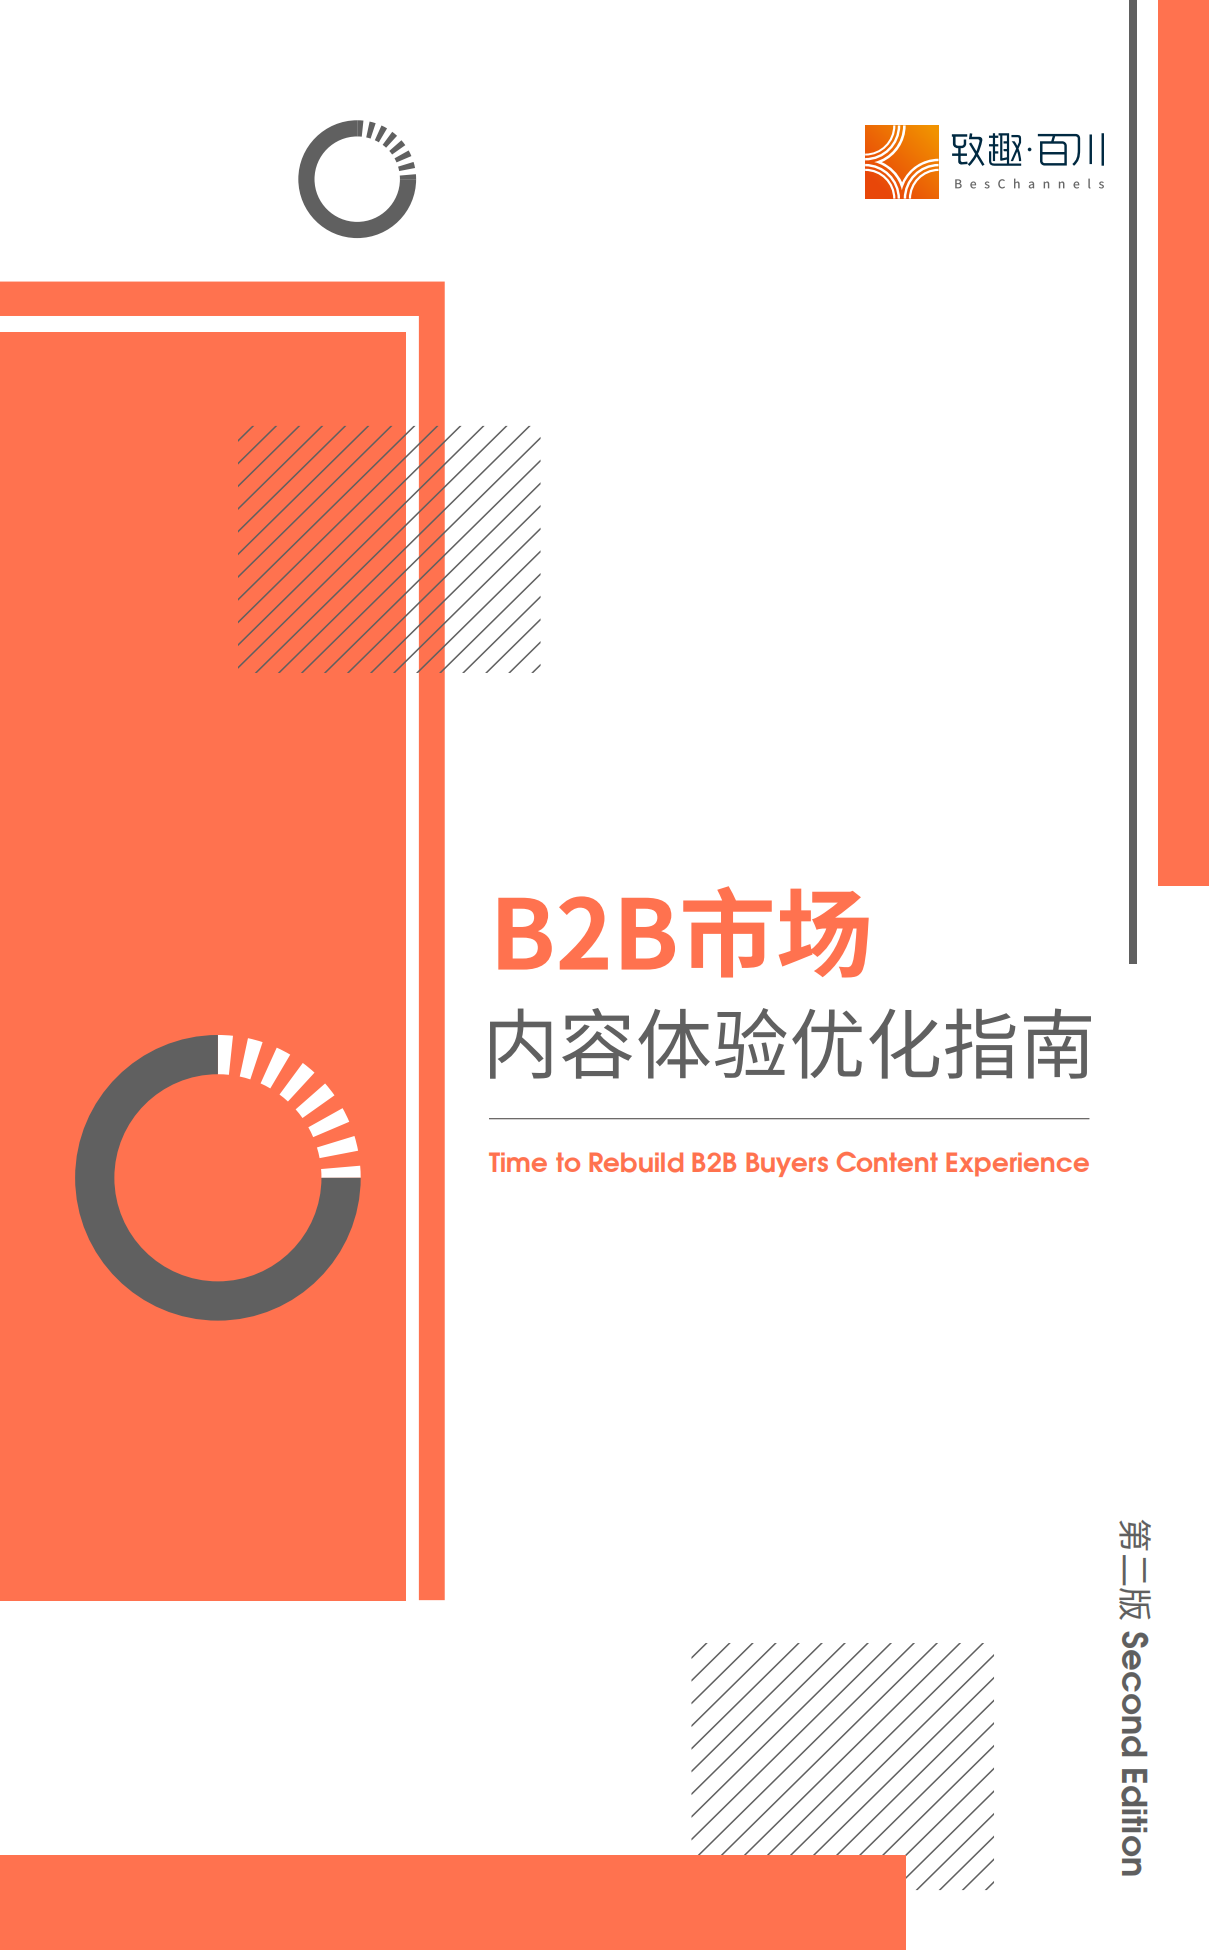 「数字营销圈子」B2B市场内容体验优化指南-白皮书